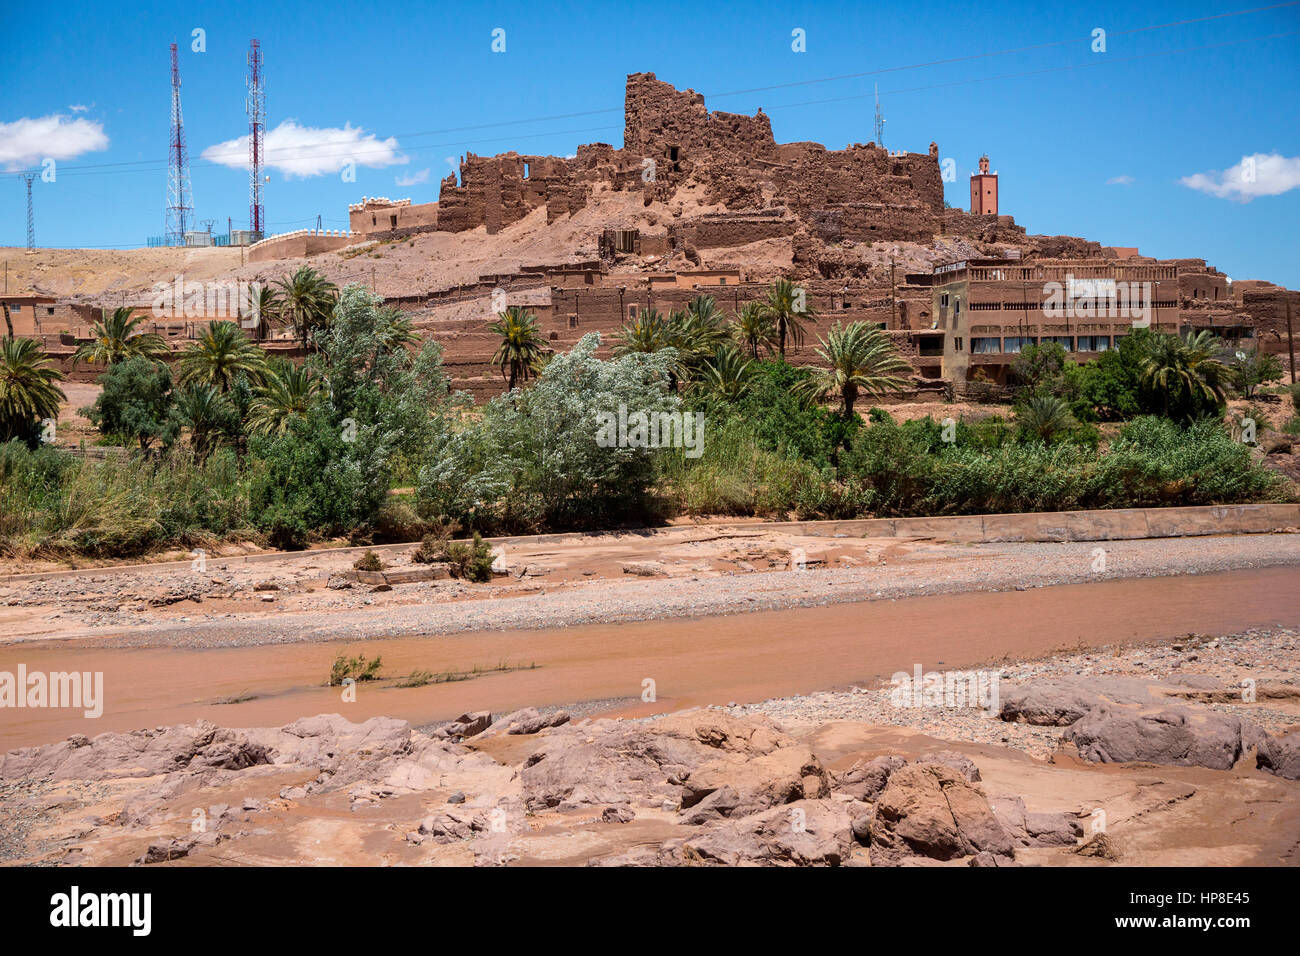 Montagnes de l'Atlas, au Maroc. Vieux Ksar en ruine, des immeubles modernes en premier plan, les tours de relais de communications sur une colline. Banque D'Images